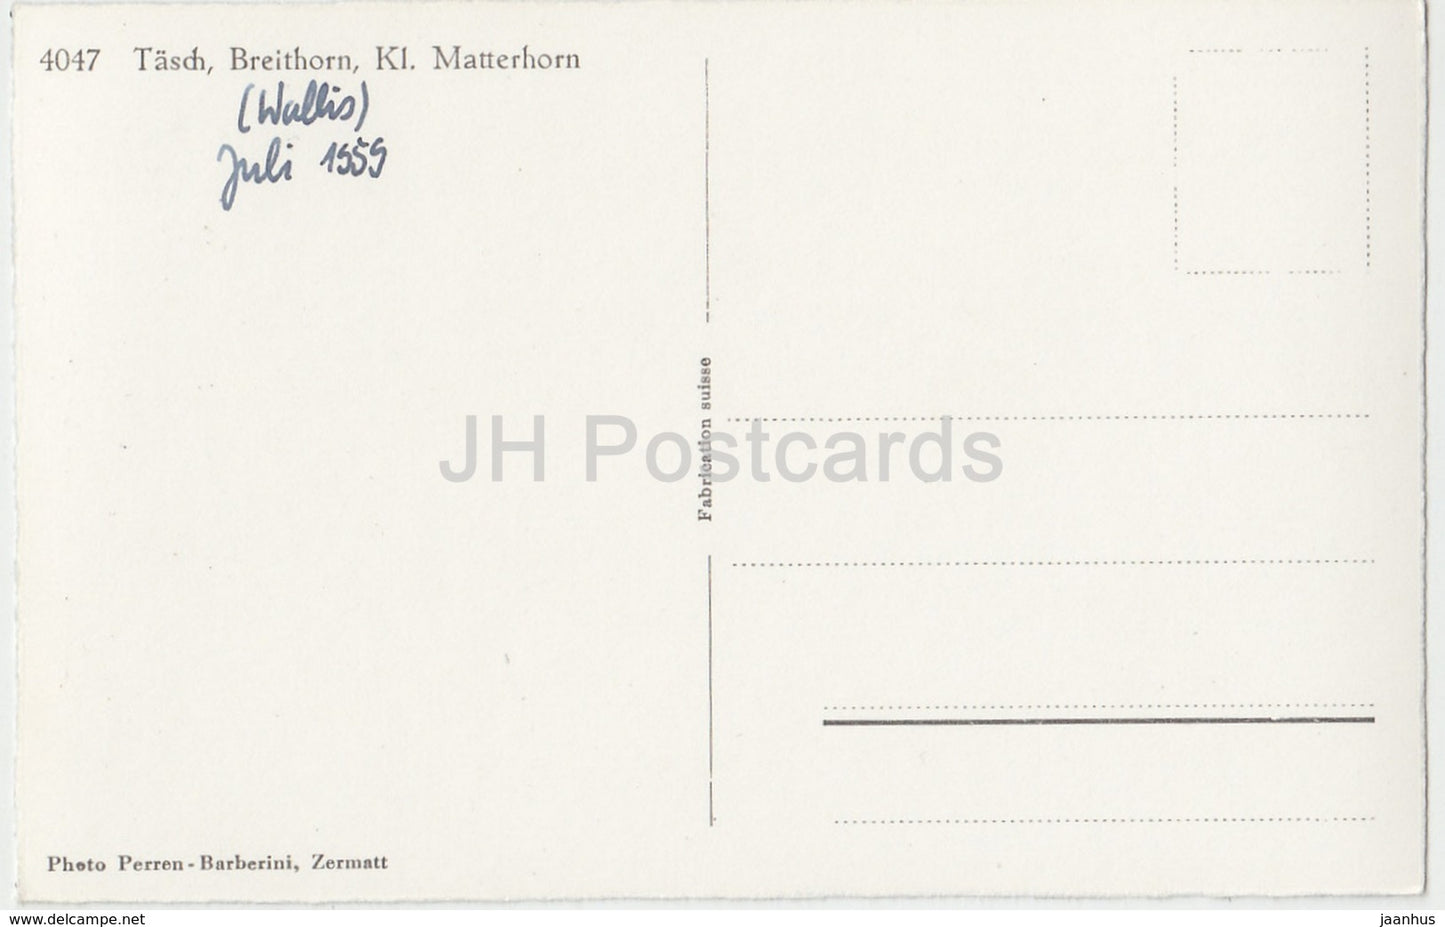 Täsch - Breithorn - Kl. Matterhorn - 4047 - Schweiz - 1959 - gebraucht